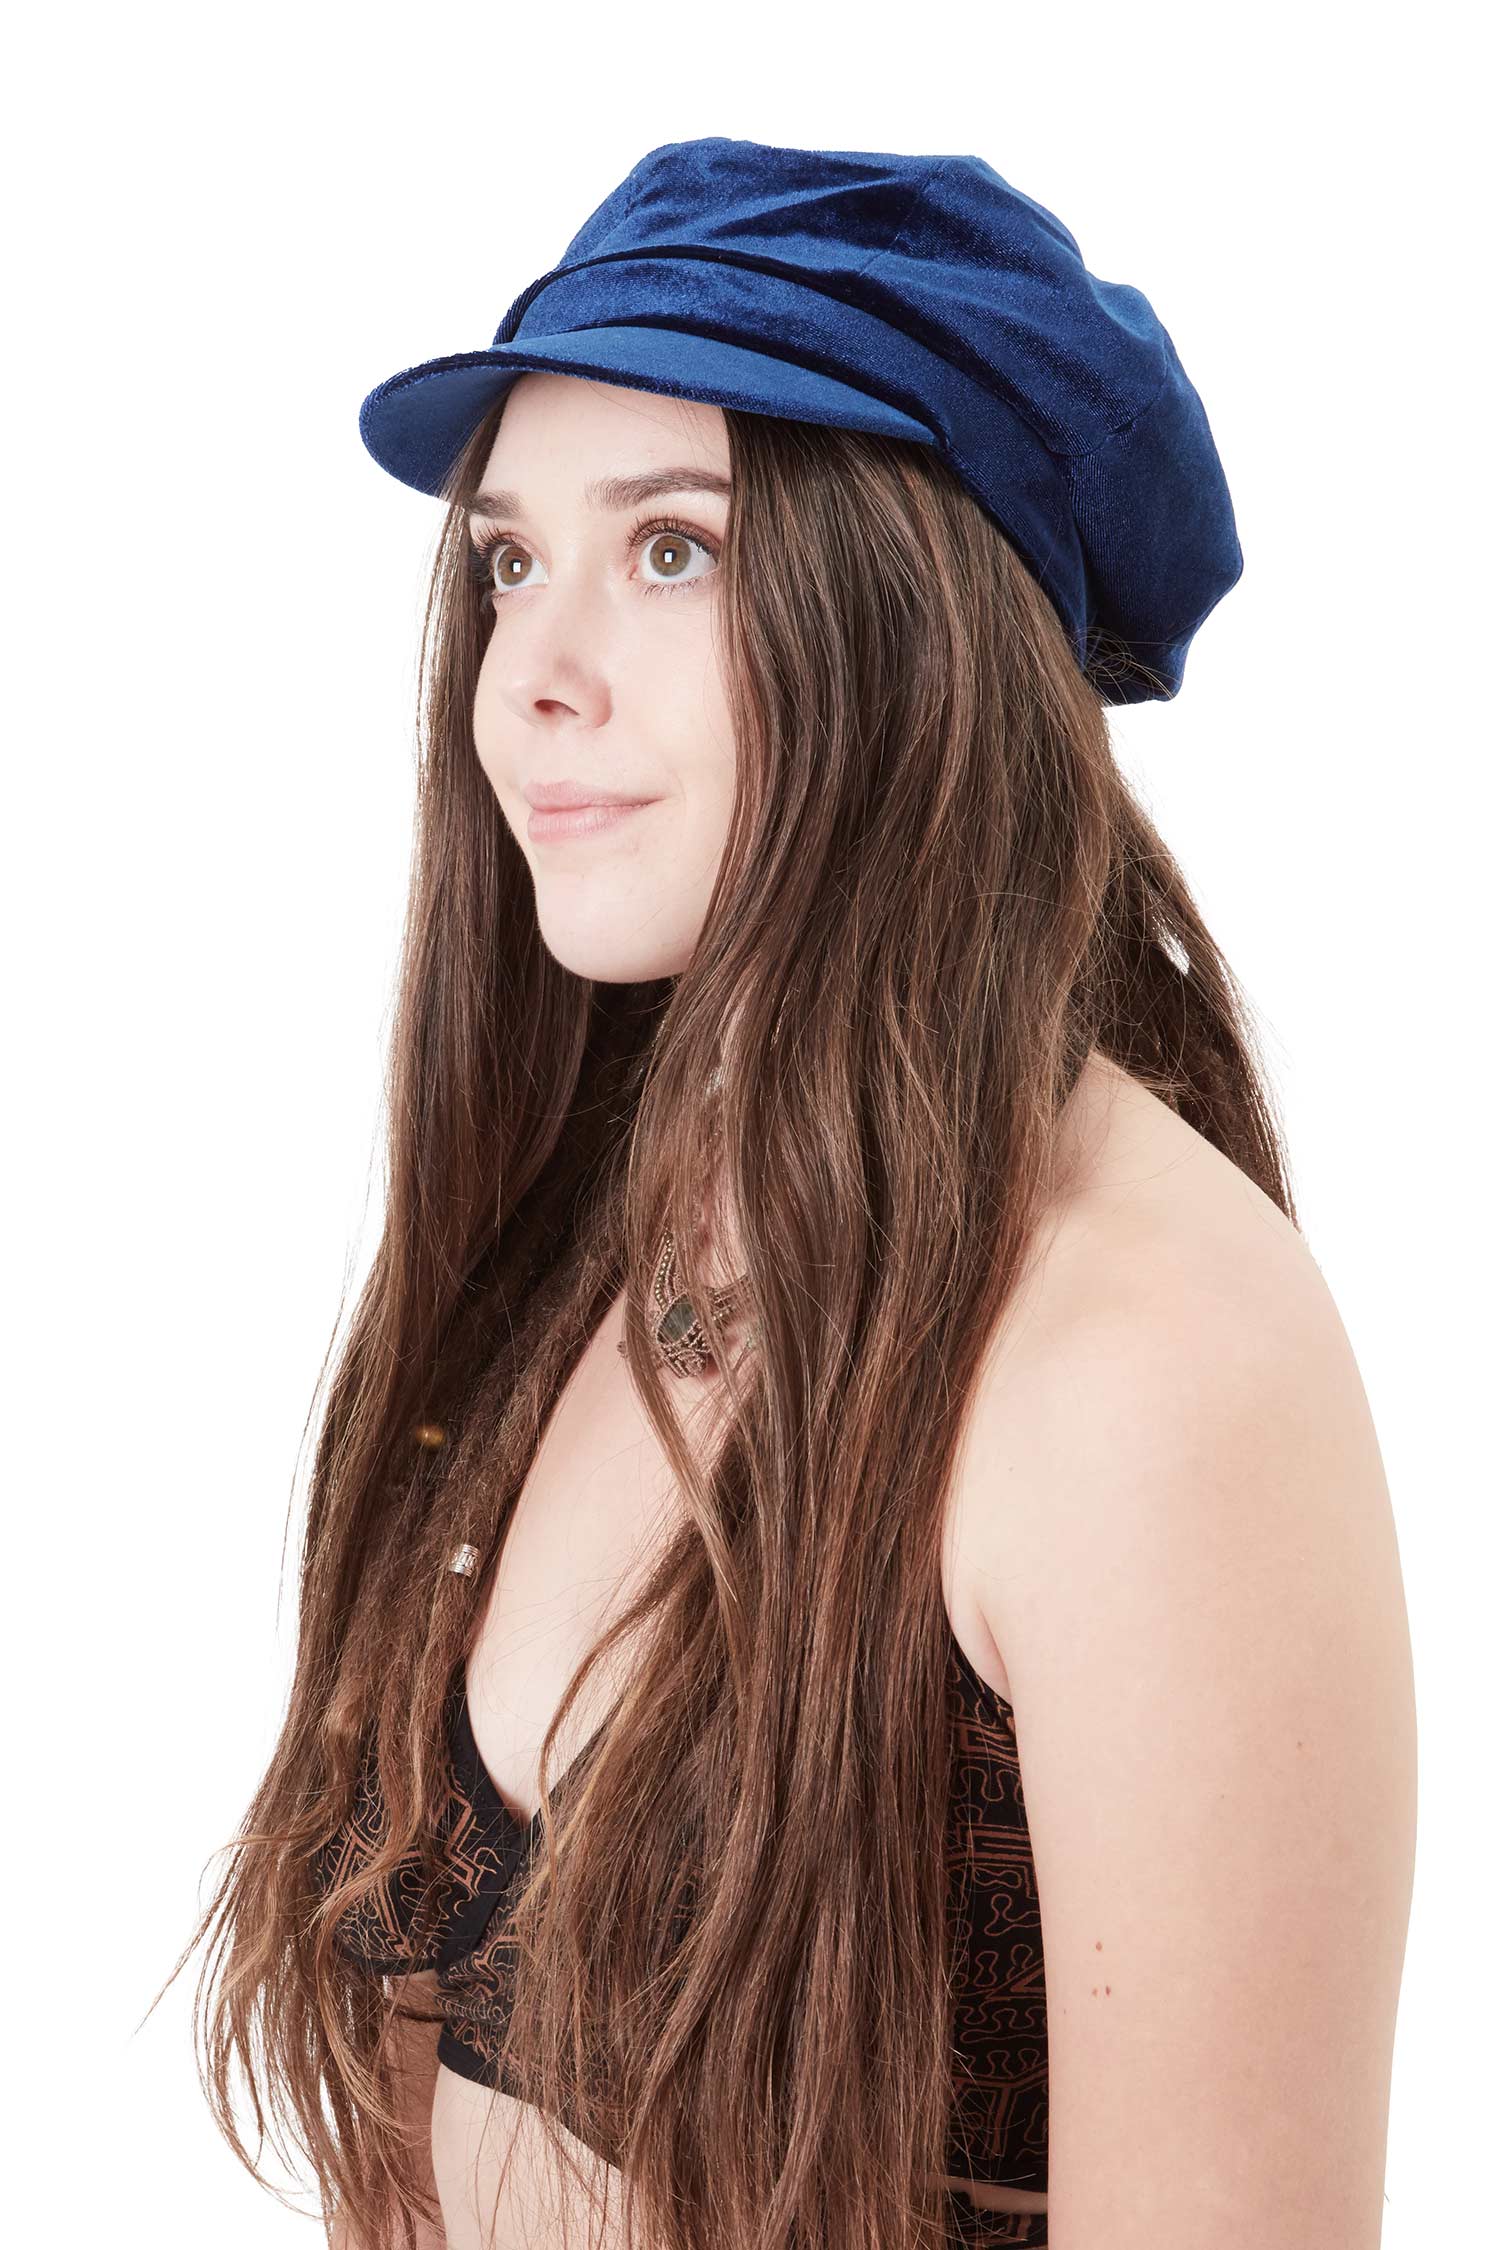 Velvet Baker Boy Hat, Ladies Hippy Newsboy Cap | Altshop UK